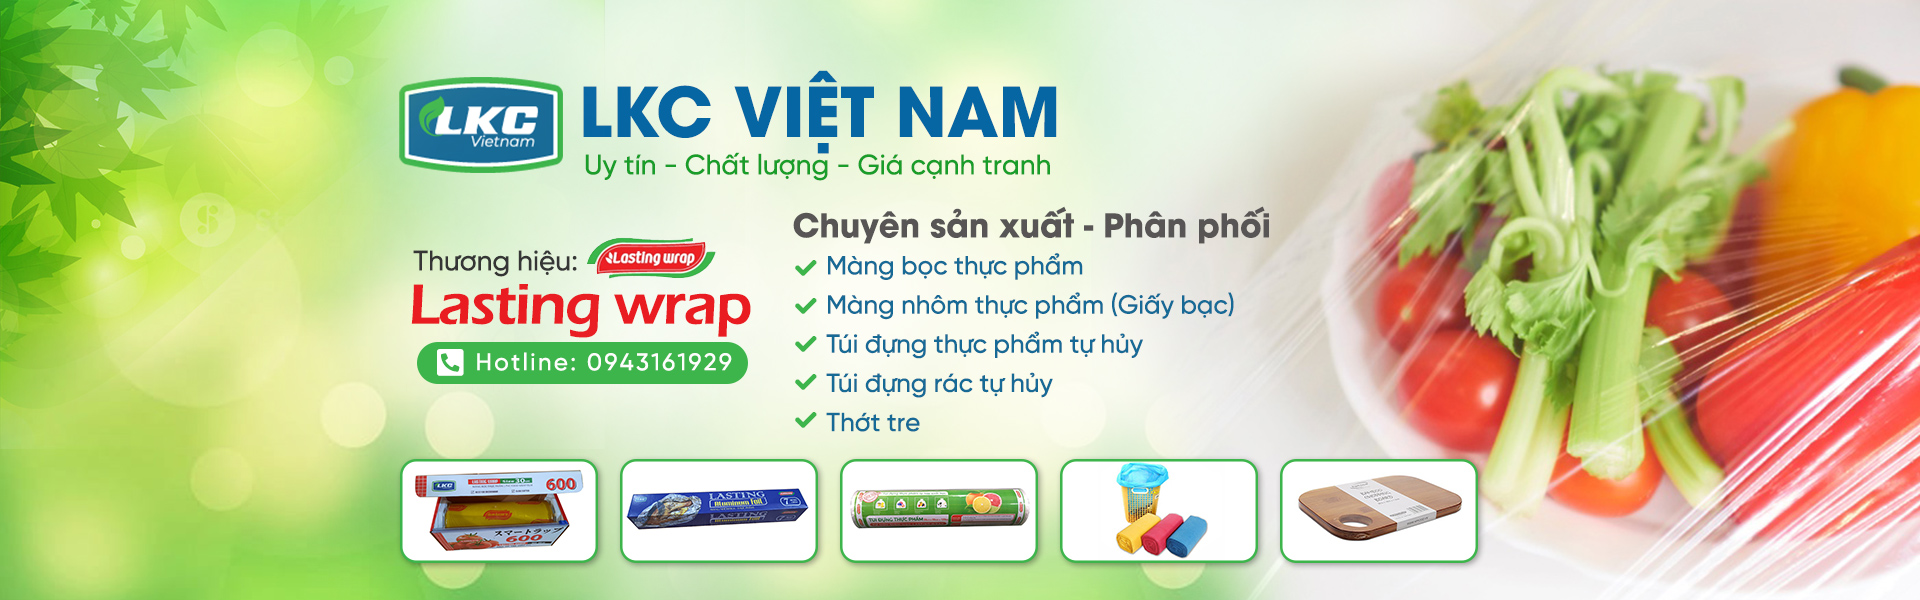 LKC Việt Nam